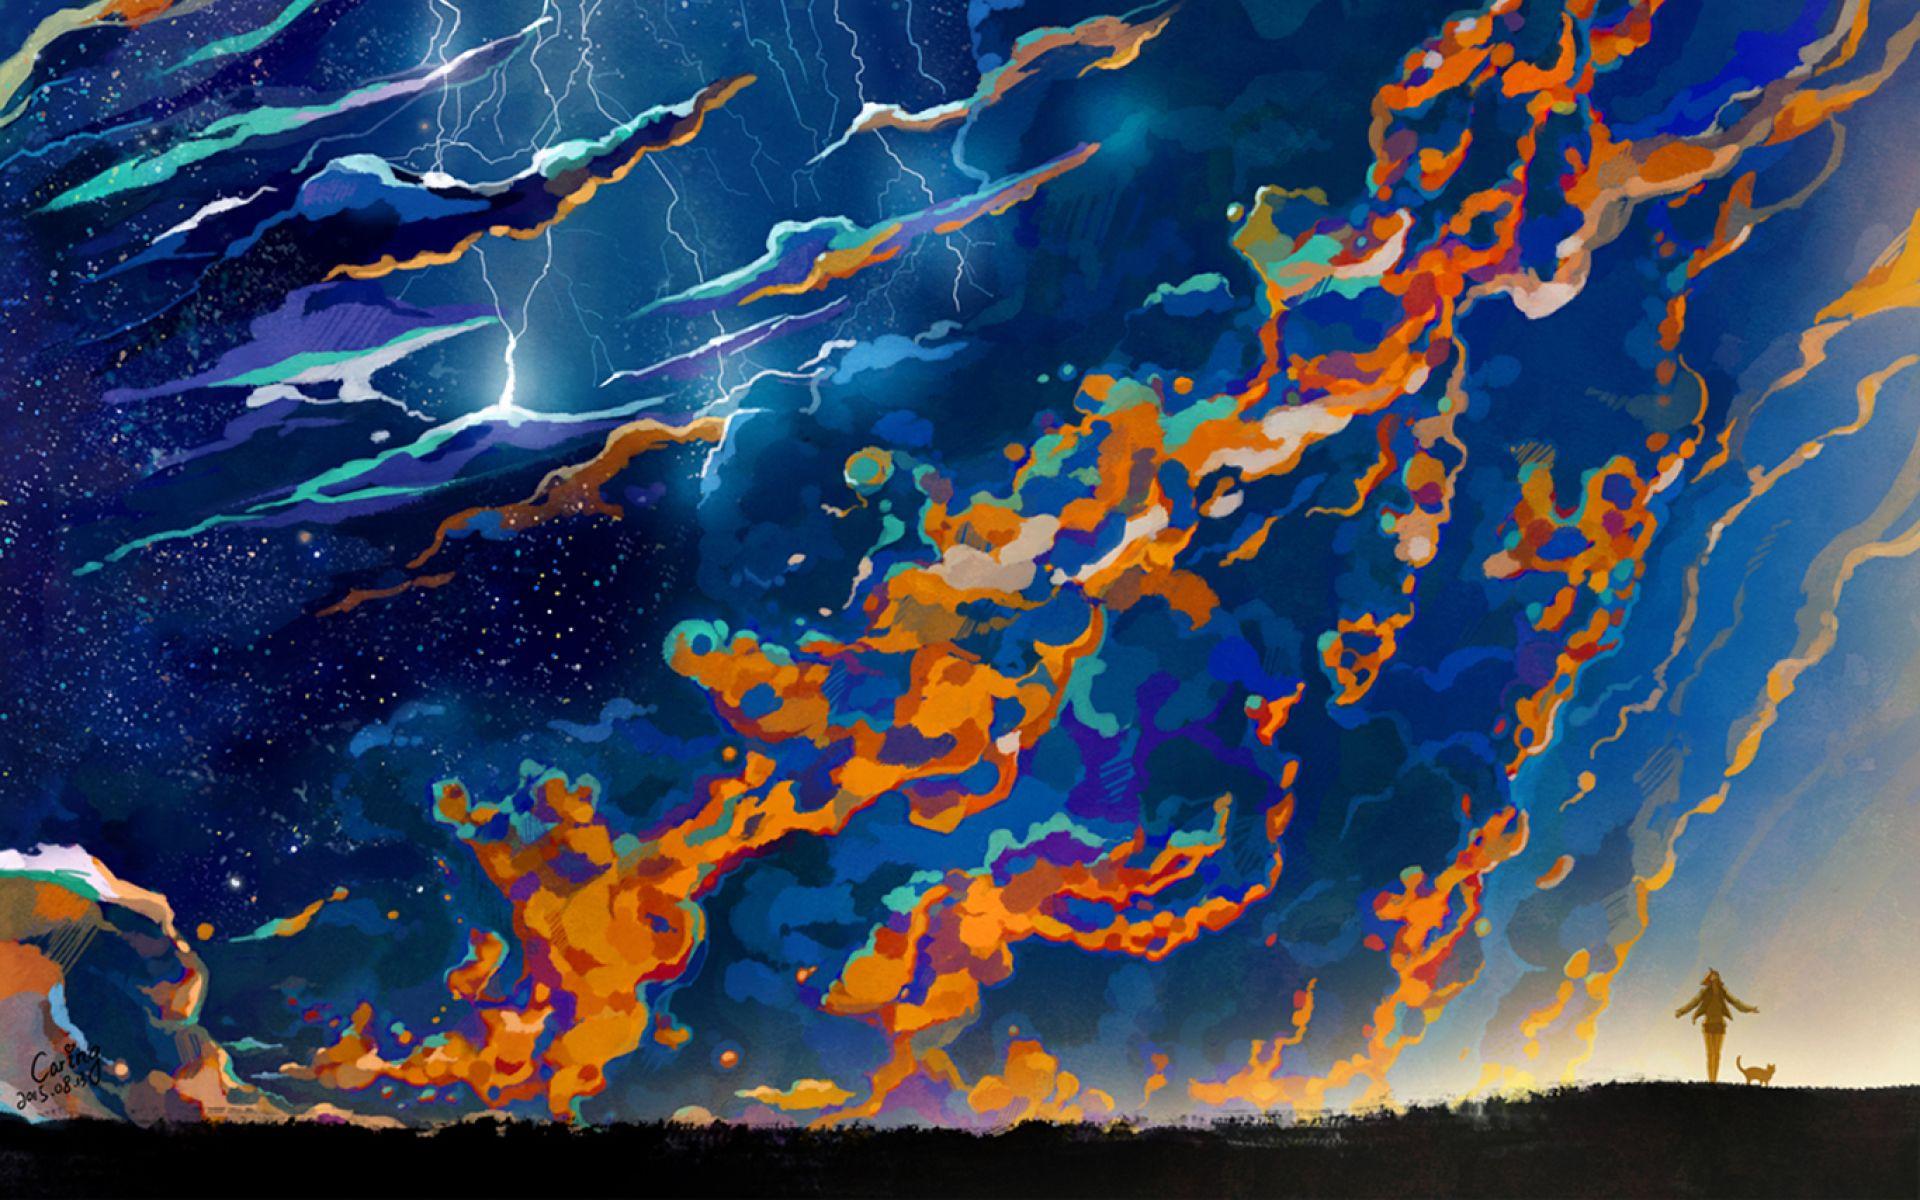 Lightning & Thunder wallpaper. Lightning & Thunder